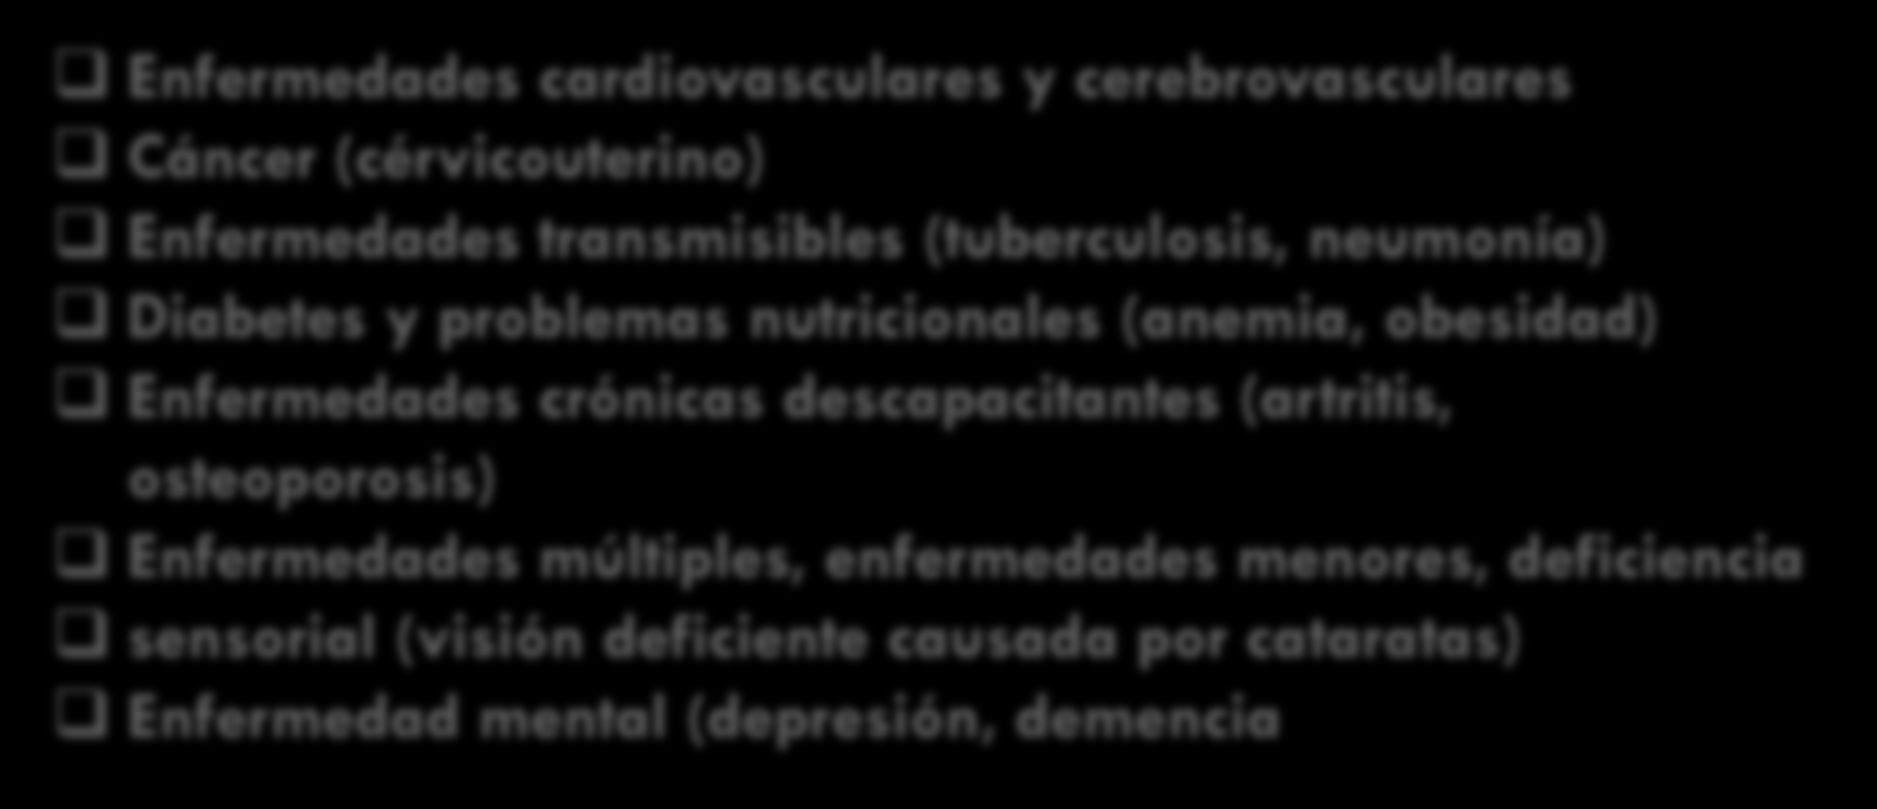 Principales Causas de Morbilidad y Mortalidad de Mujeres de Mayor Edad En Las Américas América Latina y el Caribe (en desarrollo) Enfermedades cardiovasculares y cerebrovasculares Cáncer